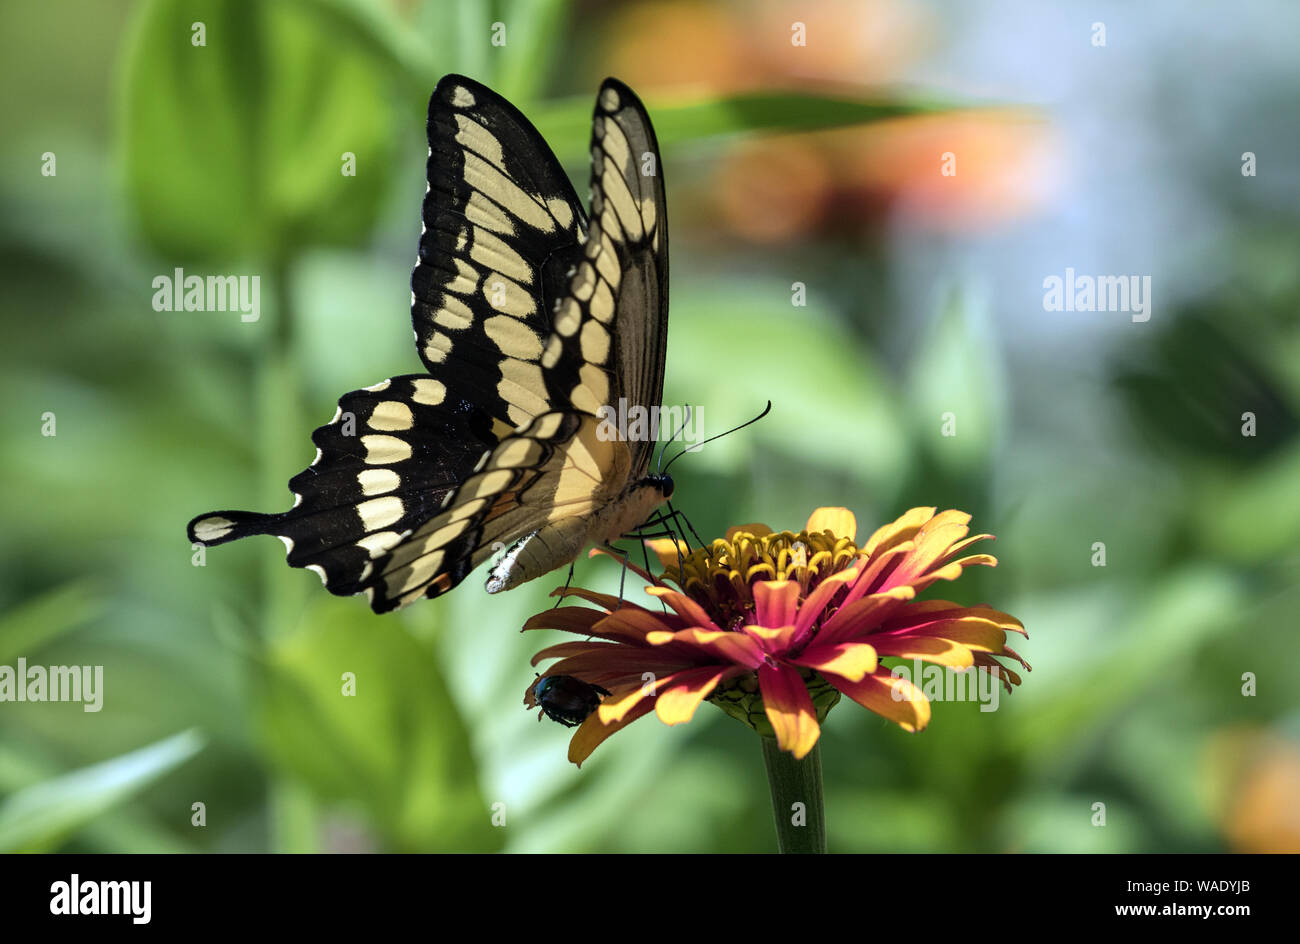 Gros plan du grand porte-queue papillon Papilio cresphontes) boire le nectar des fleurs Zinnia. Banque D'Images